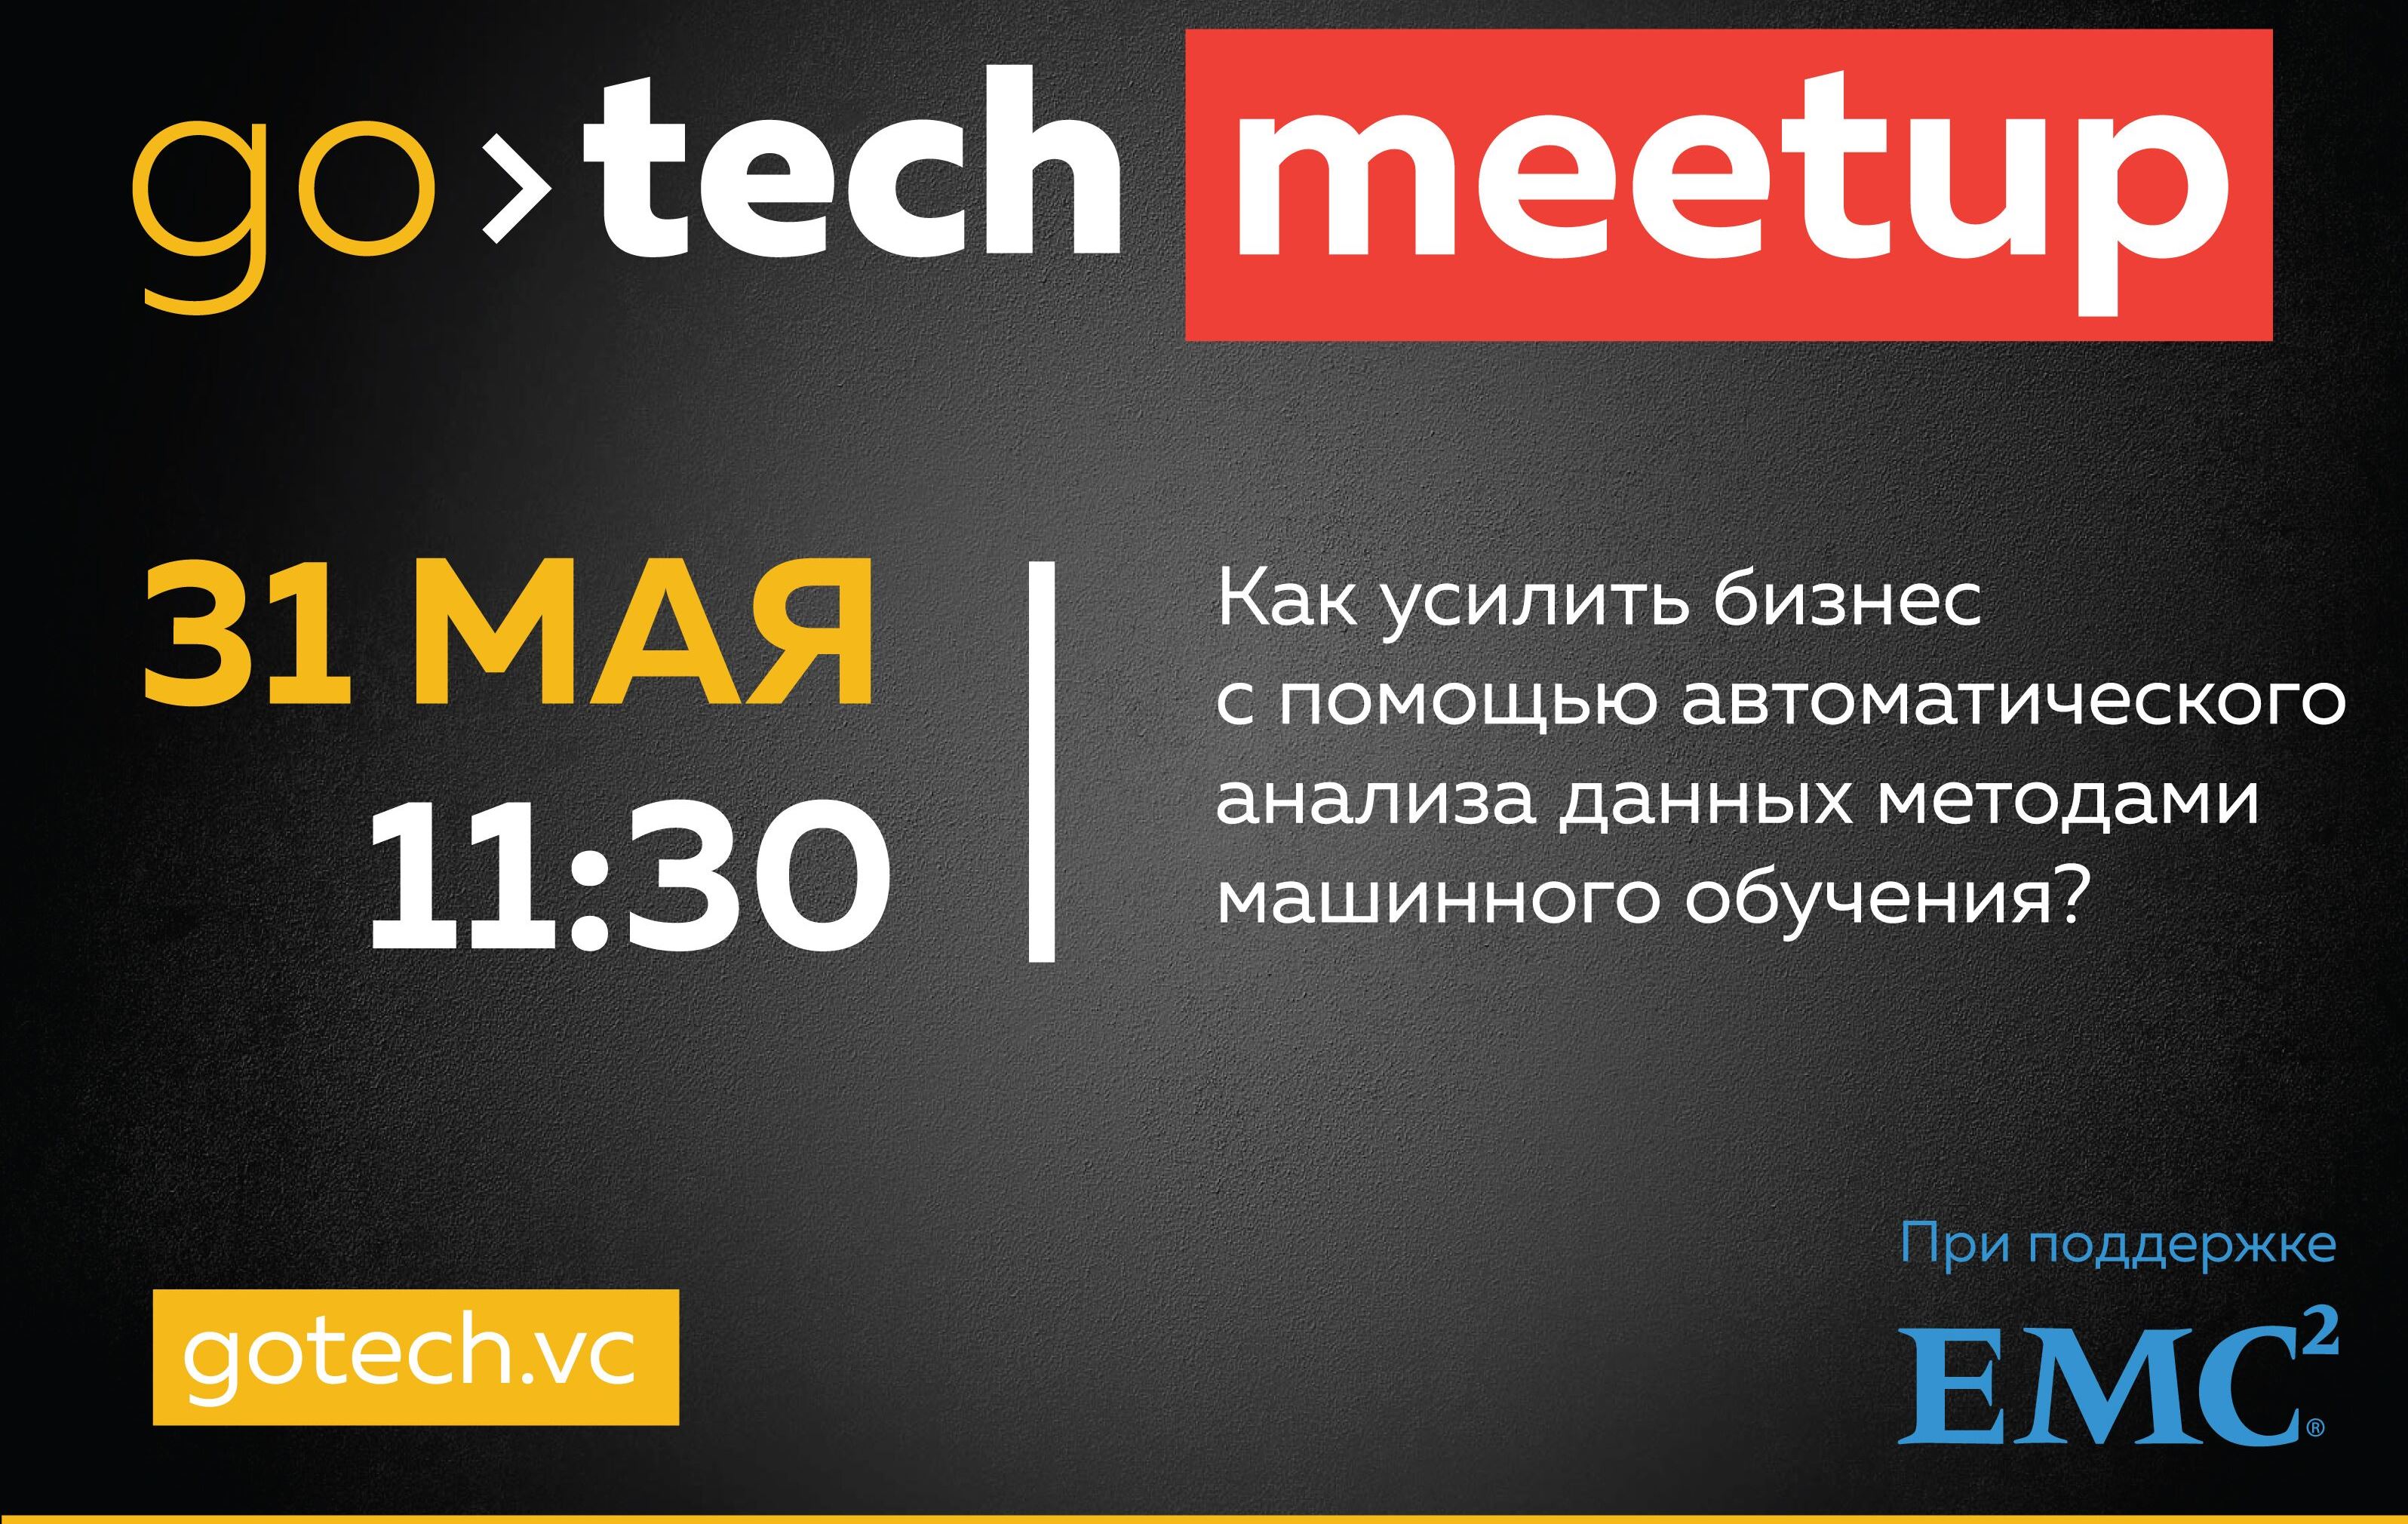 GoTech Meetup «Анализ данных методами машинного обучения»